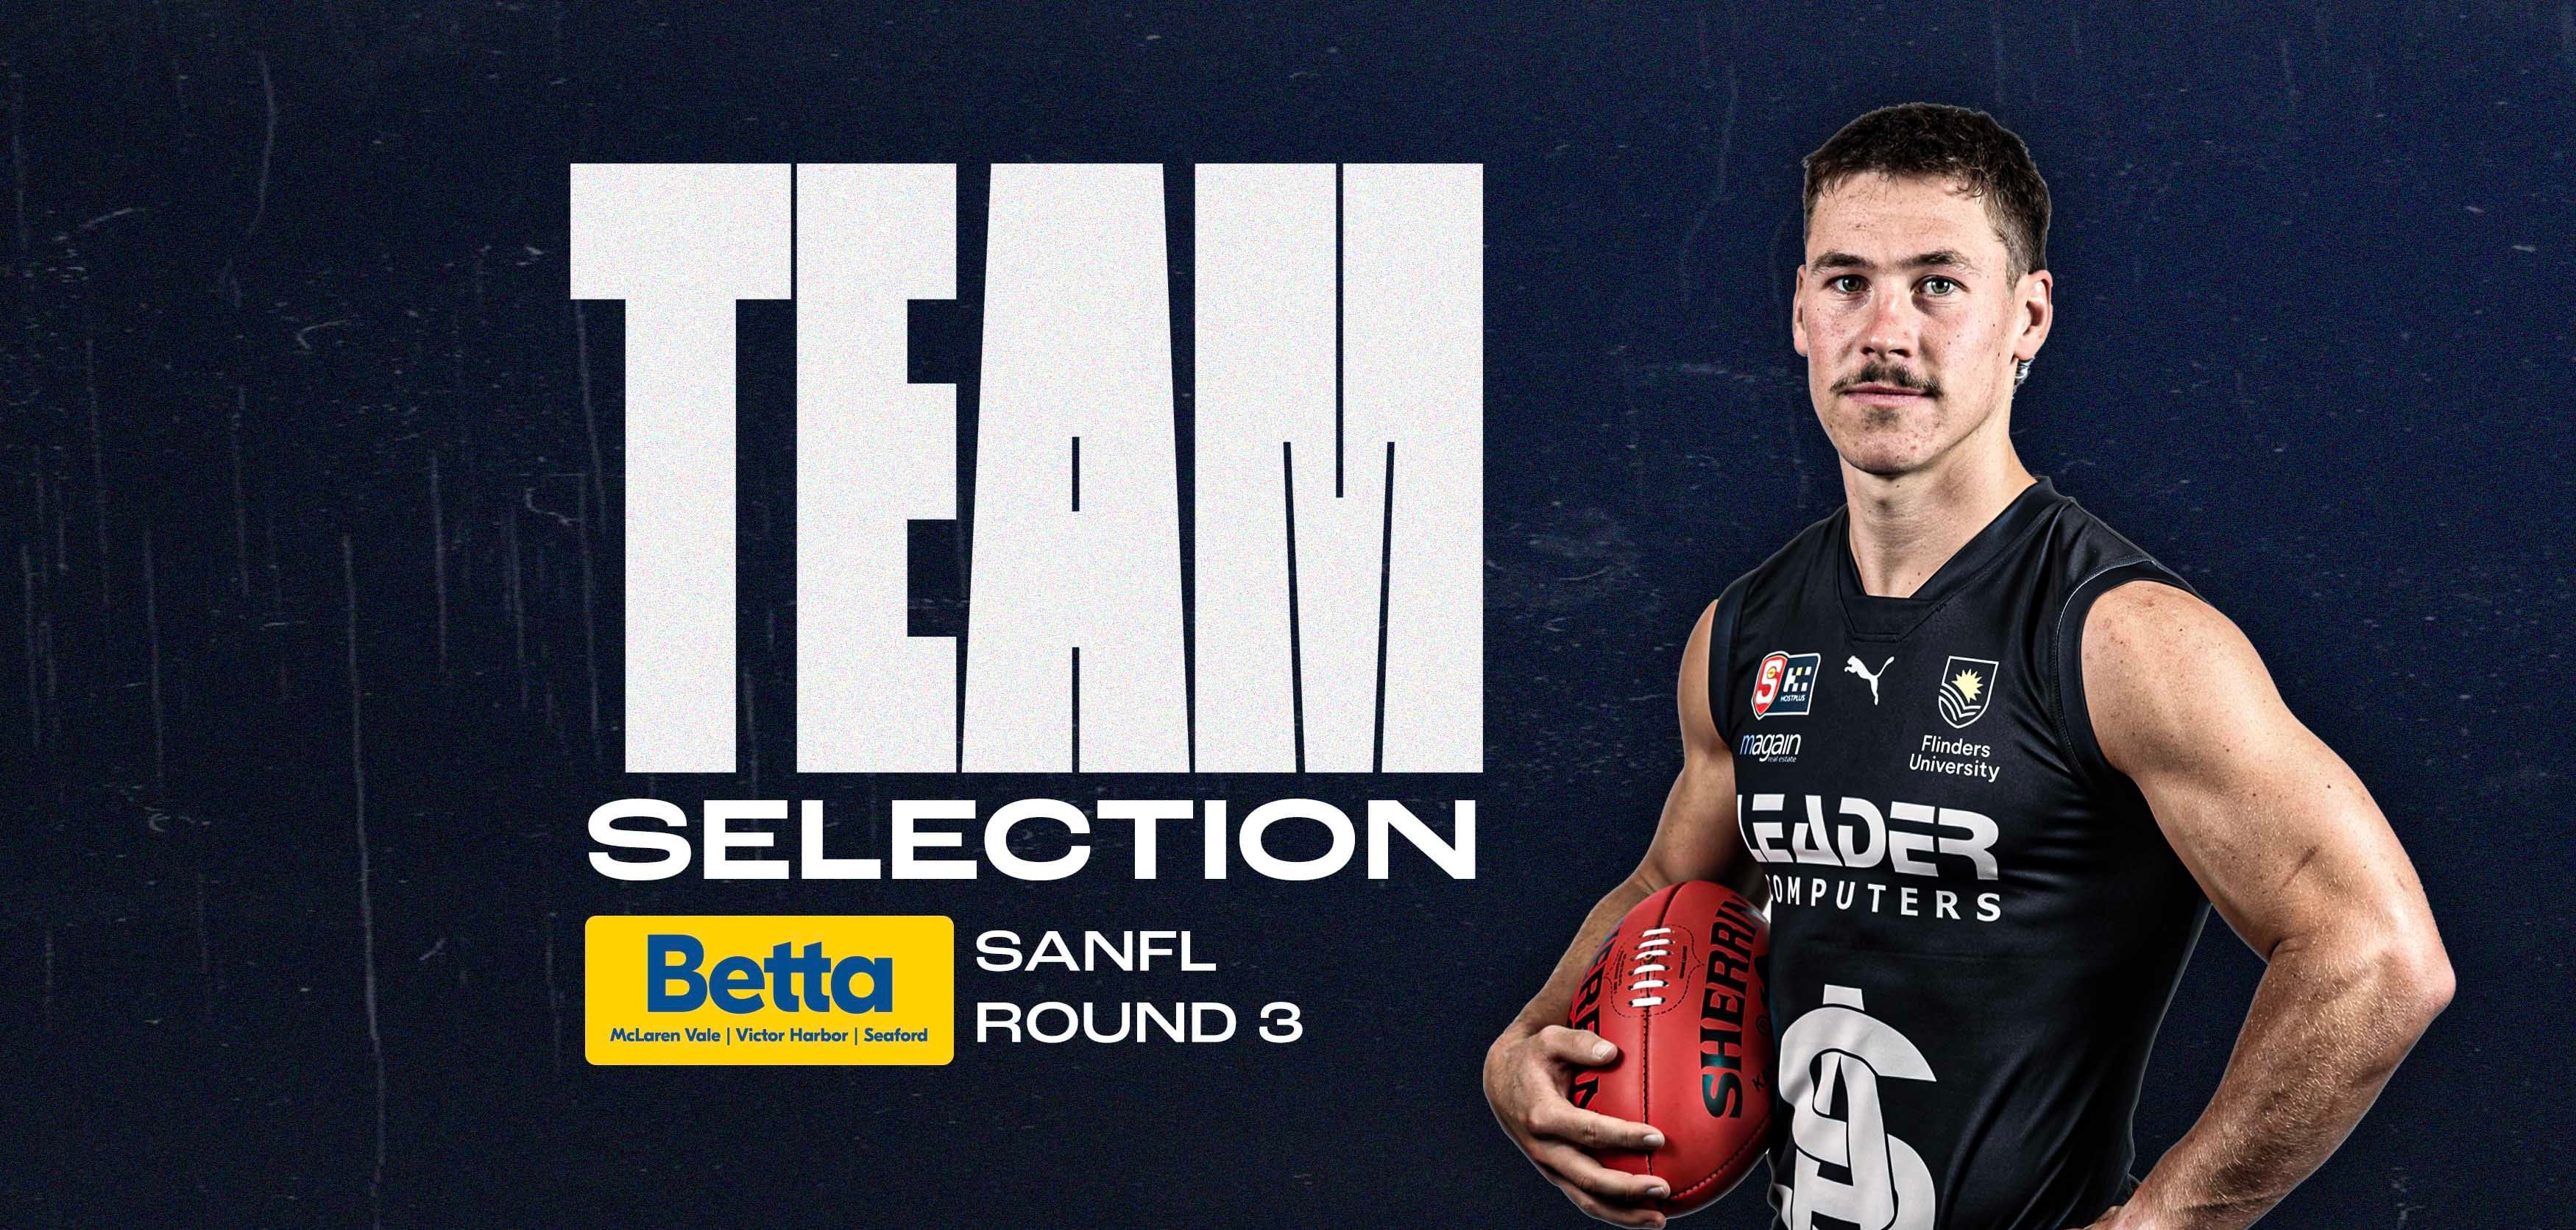 BETTA Team Selection: SANFL Round 3 v Centrals